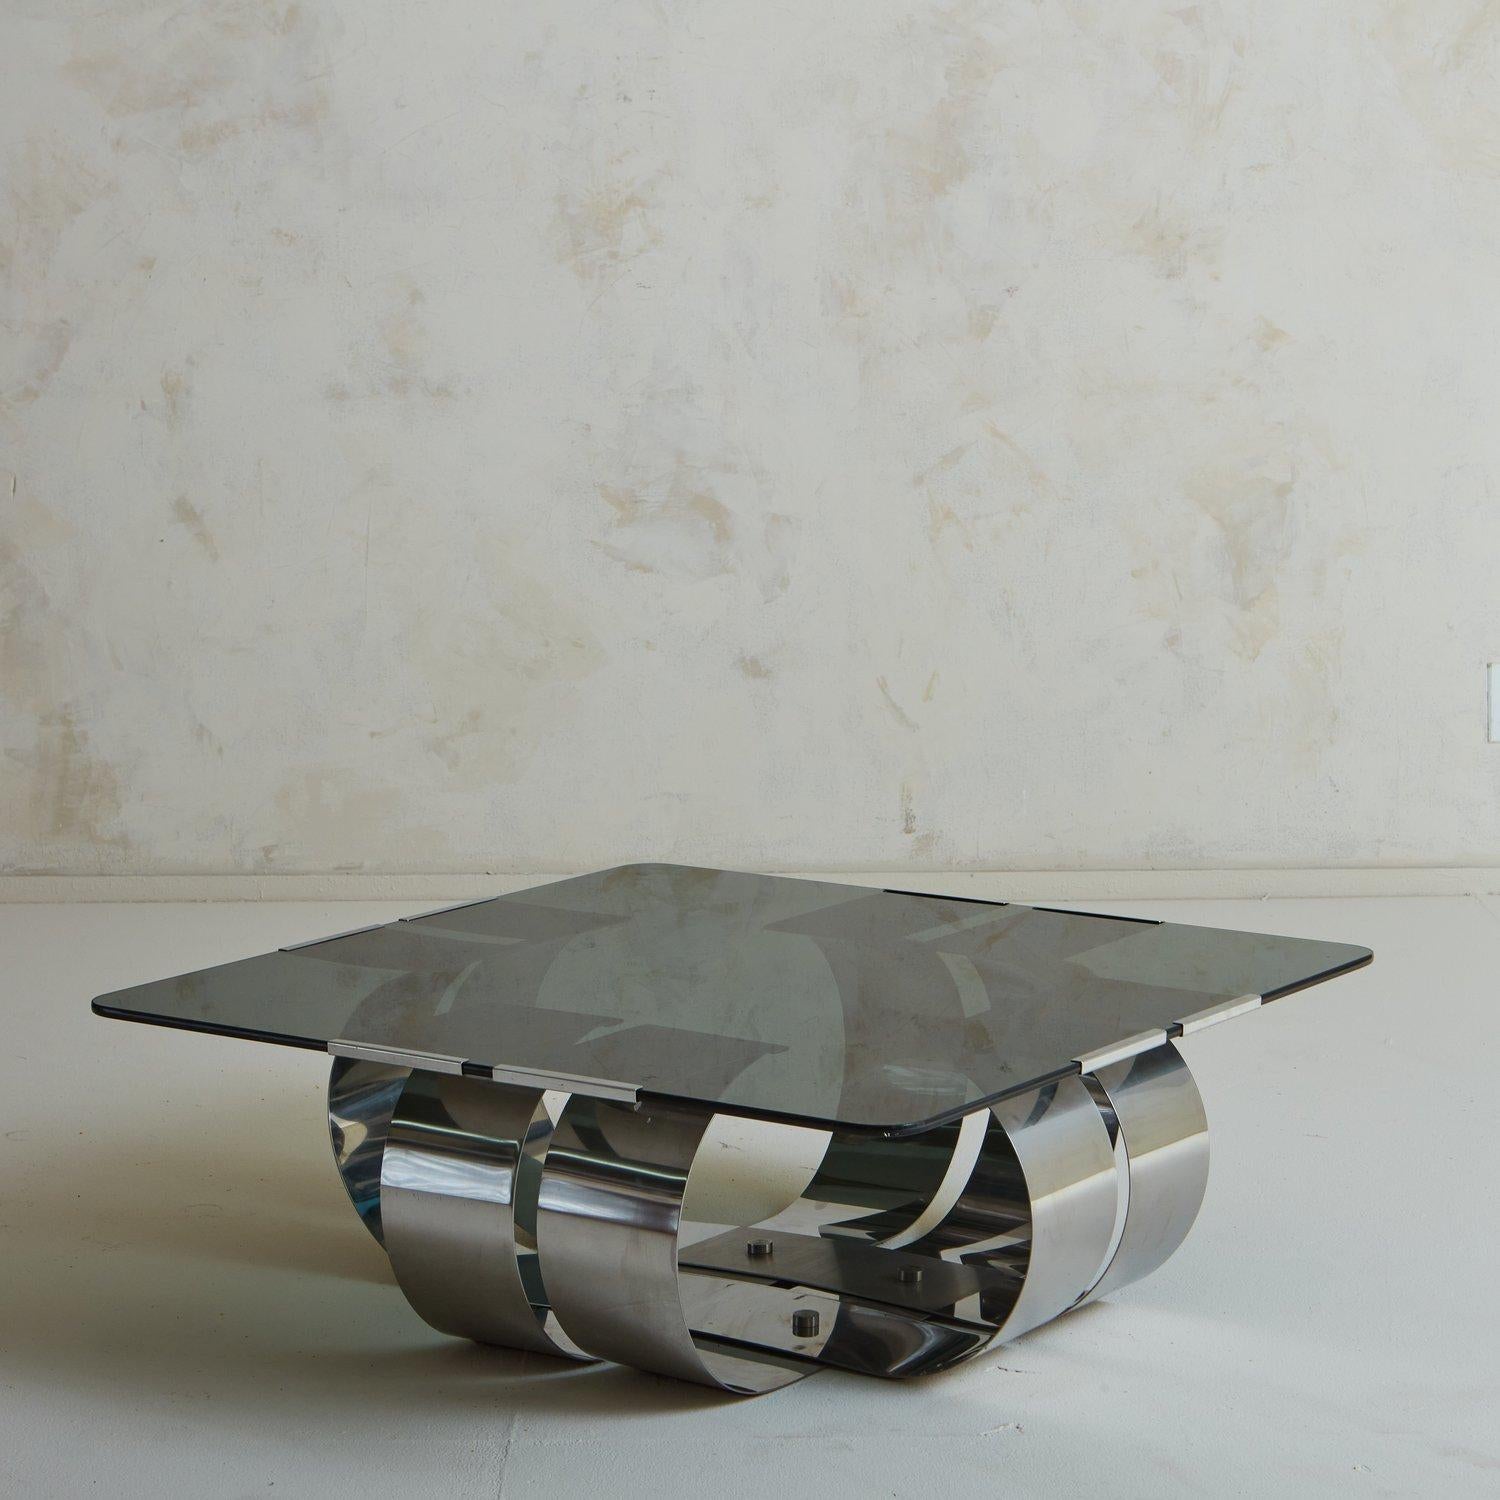 Ein bezaubernder französischer Couchtisch, entworfen von François Monnet in den 1970er Jahren. Dieser Tisch hat ein skulpturales, geschwungenes Stahlgestell und eine eingesetzte quadratische Rauchglasplatte mit abgerundeten Kanten. Nicht signiert.